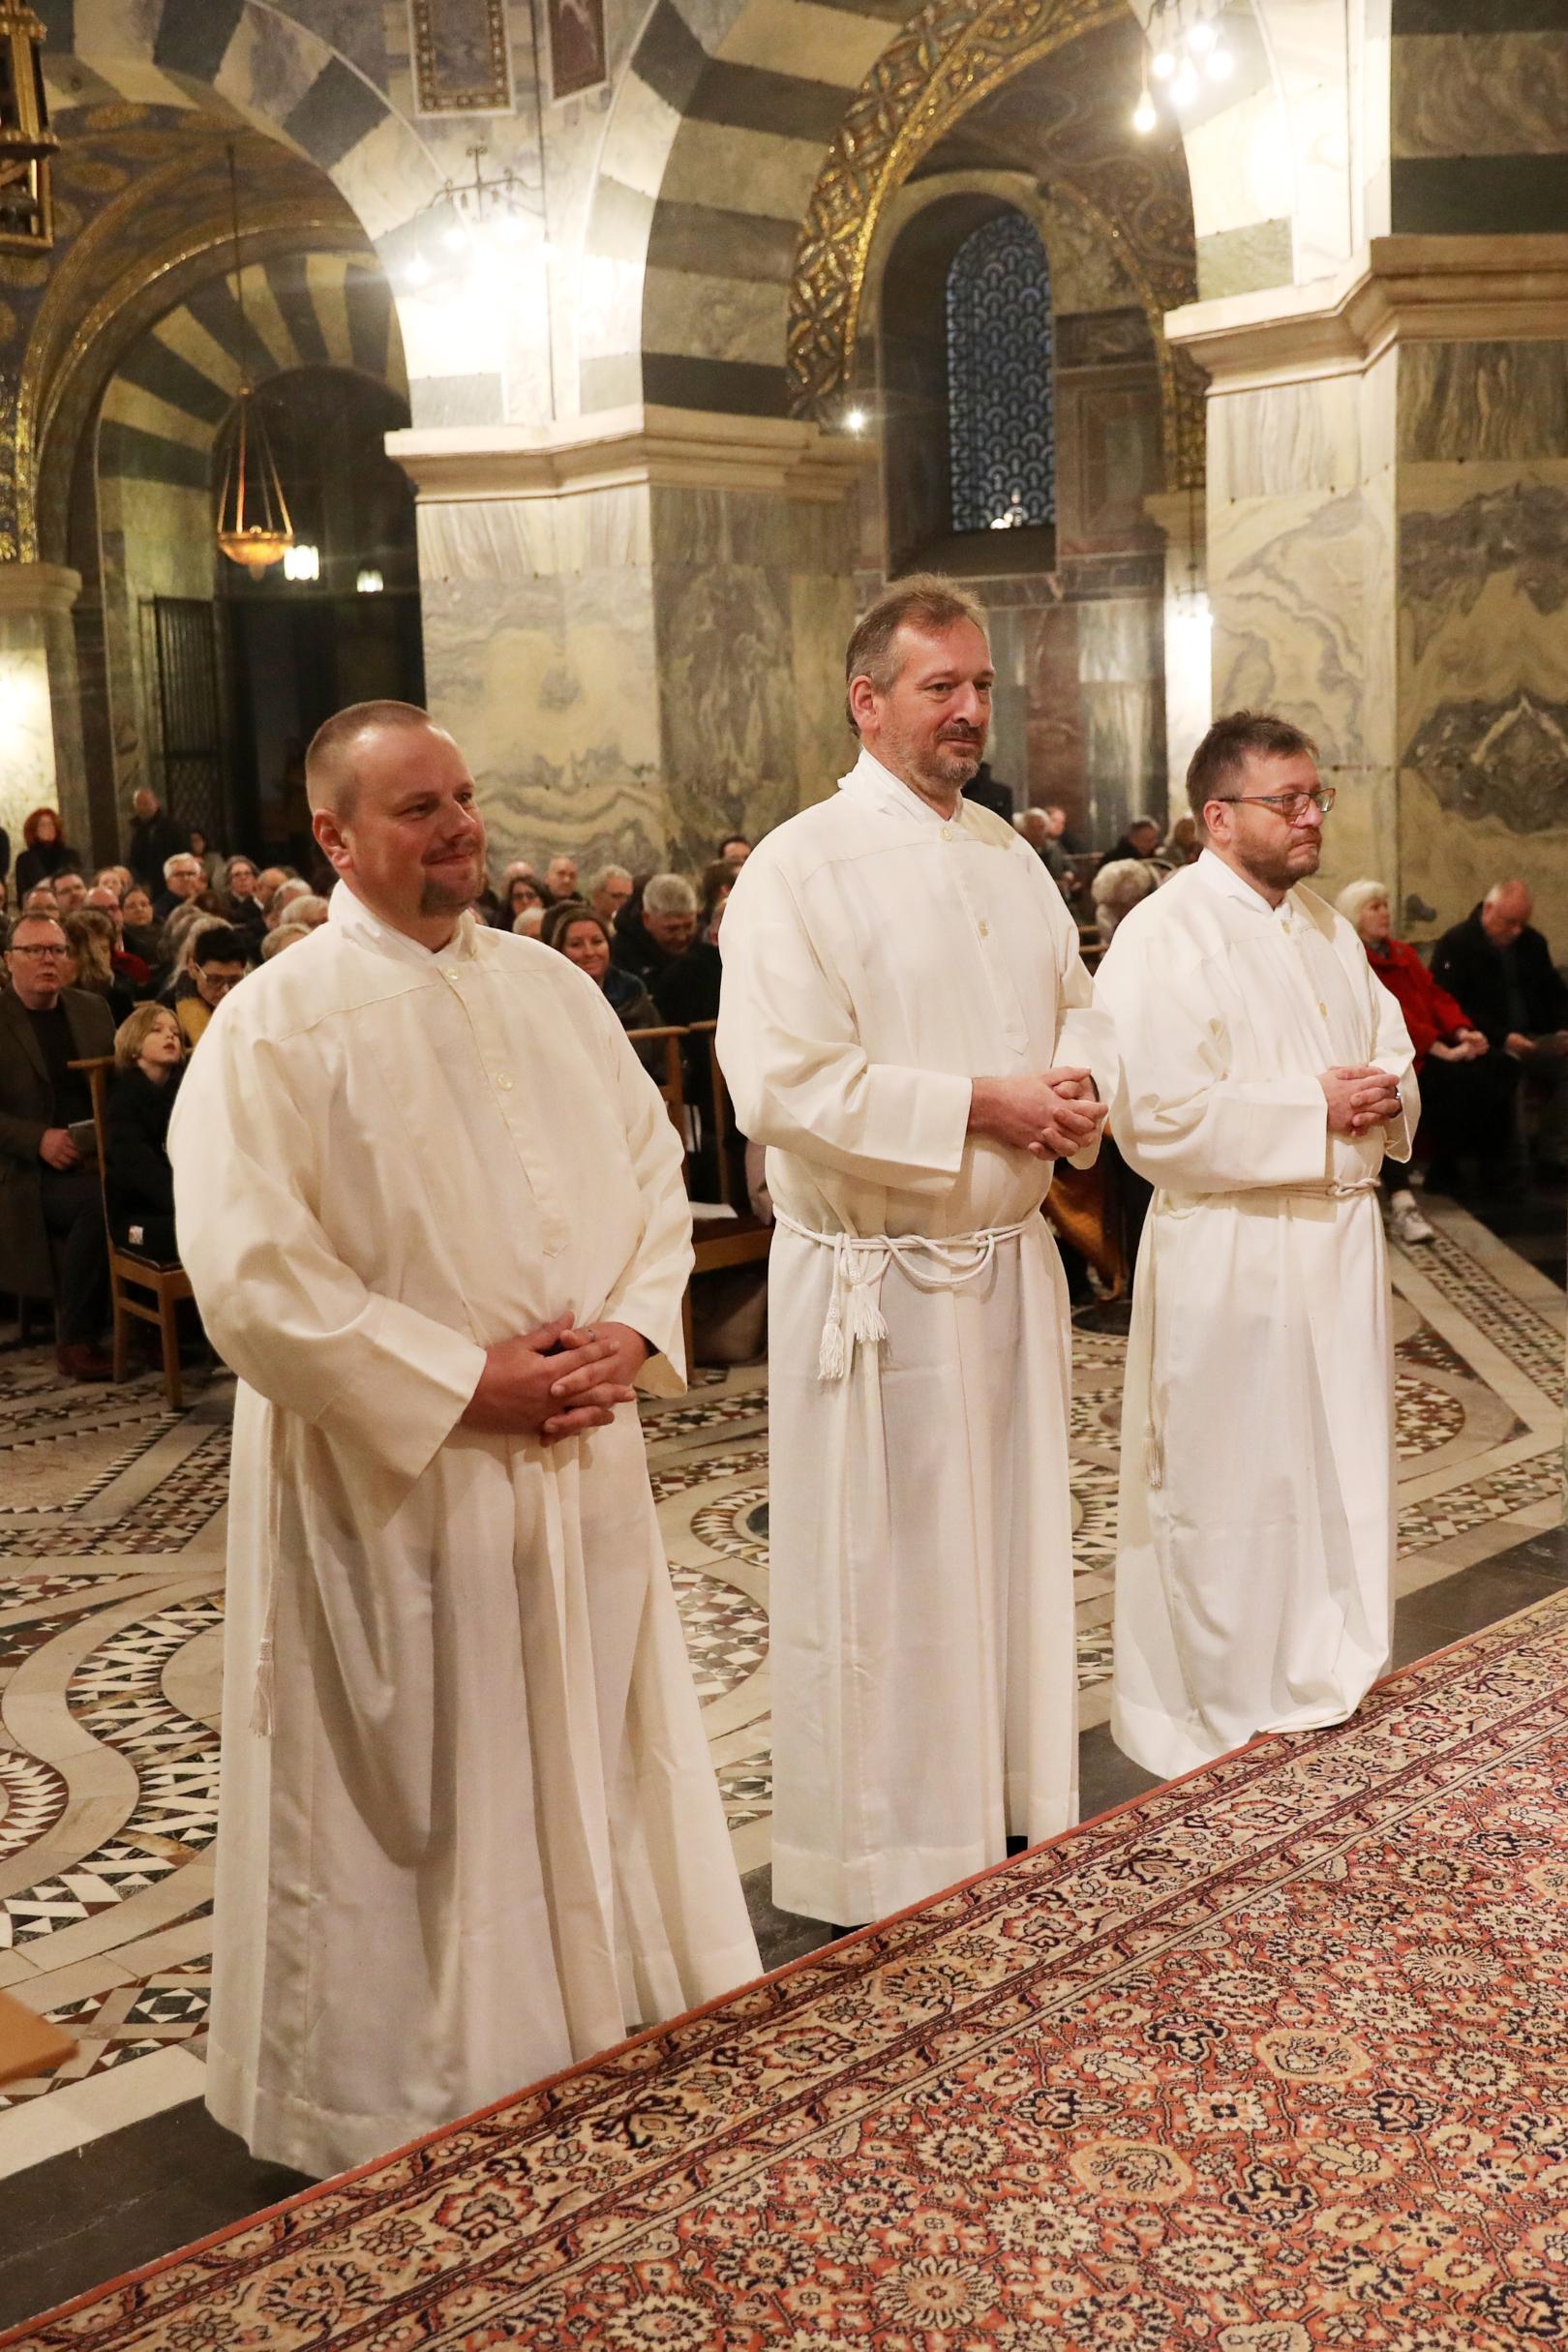 Christian Harttig (v.l.), Markus Offner, und Daniel Ohlig zu Ständigen Diakonen geweiht. (c) Bistum Aachen / Andreas Steindl